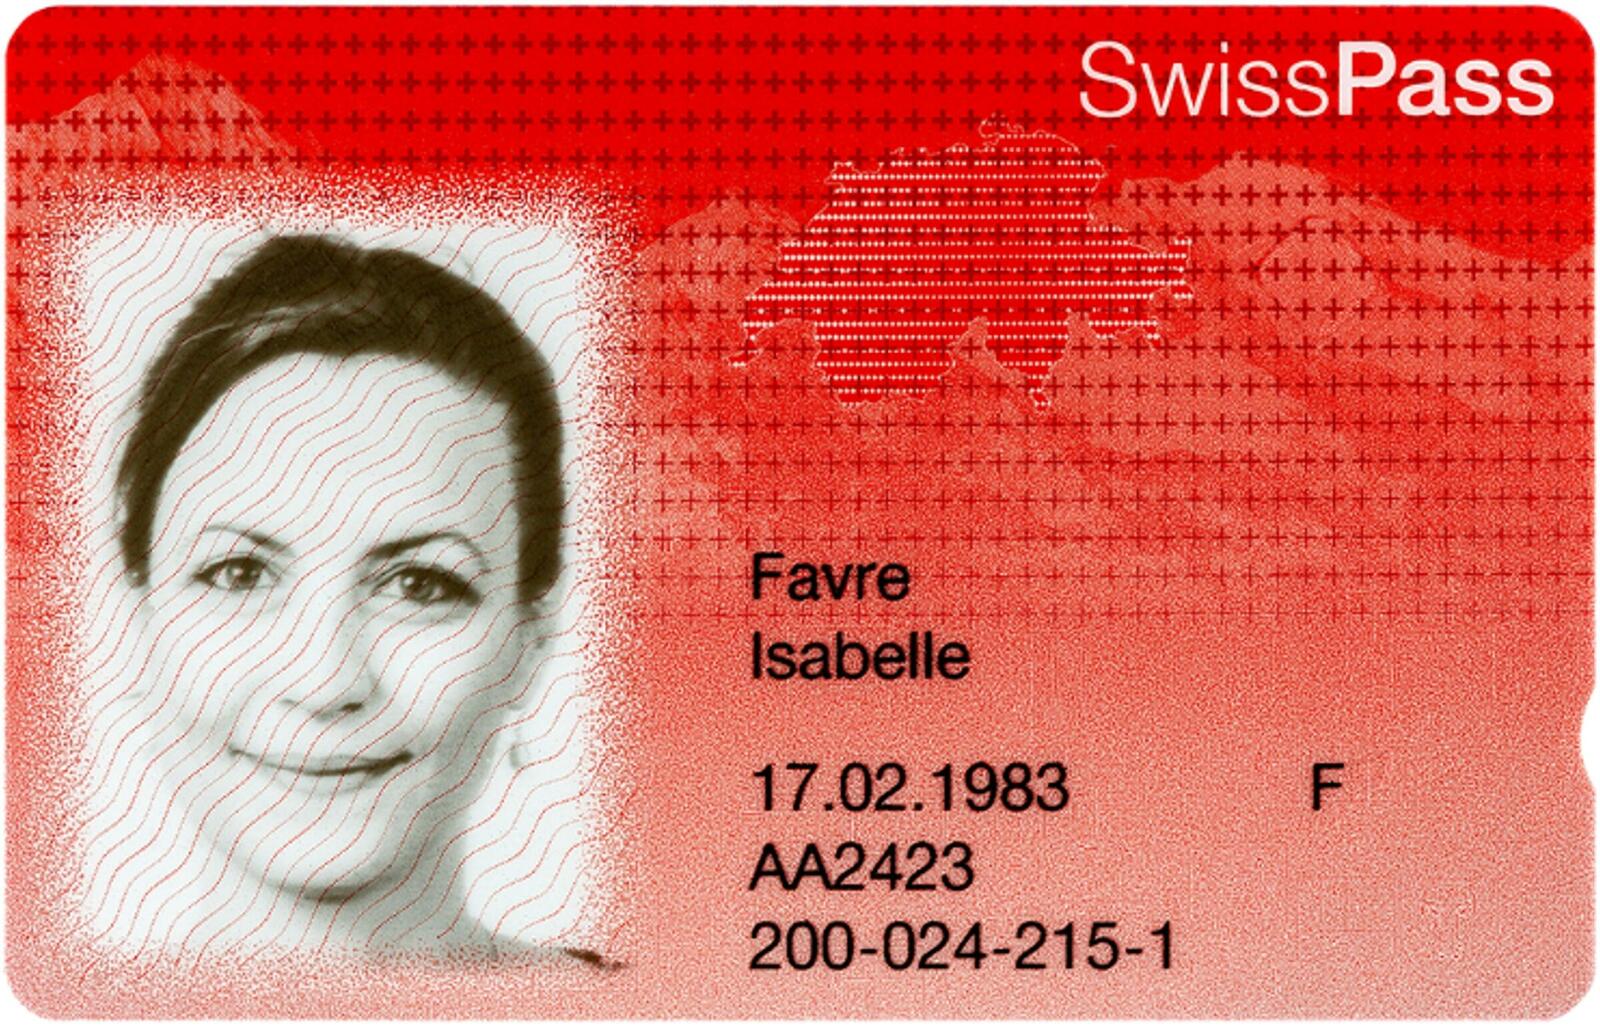 Der in der Schweiz beliebte Swisspass öffnet berührungslos und sicher Türen dank Legic-Technologie.